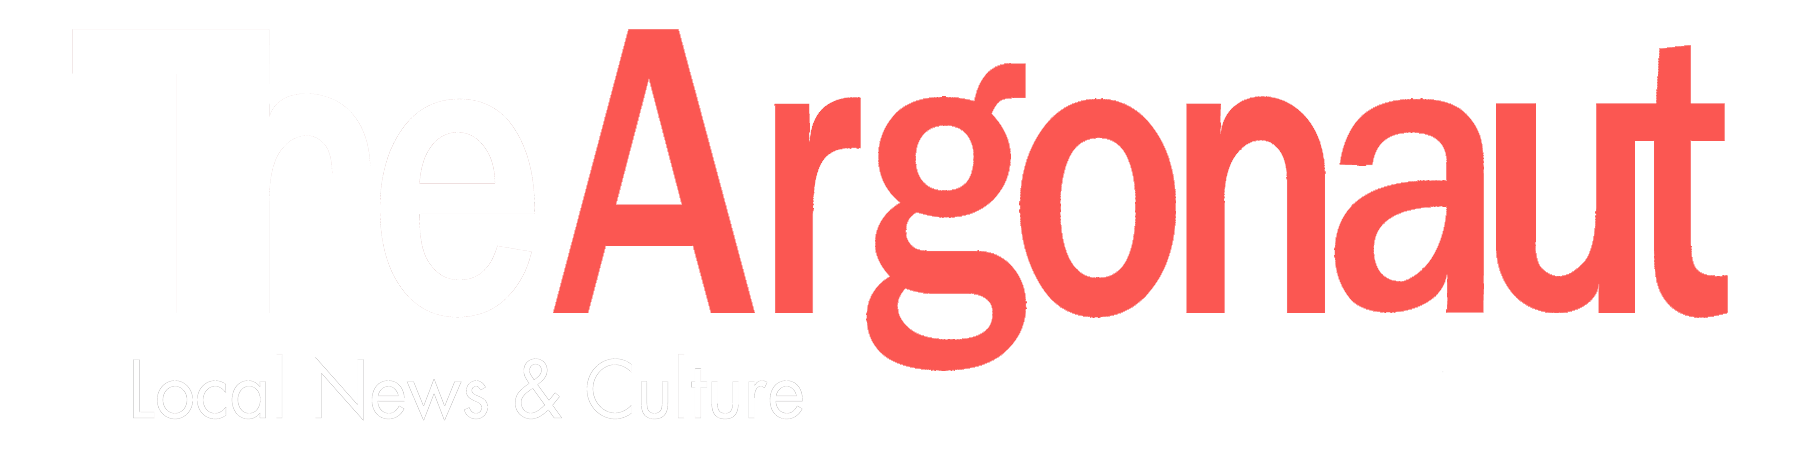 Argonaut Logo - Local News & Culture for: Marina del Rey, Venice, Santa Monica